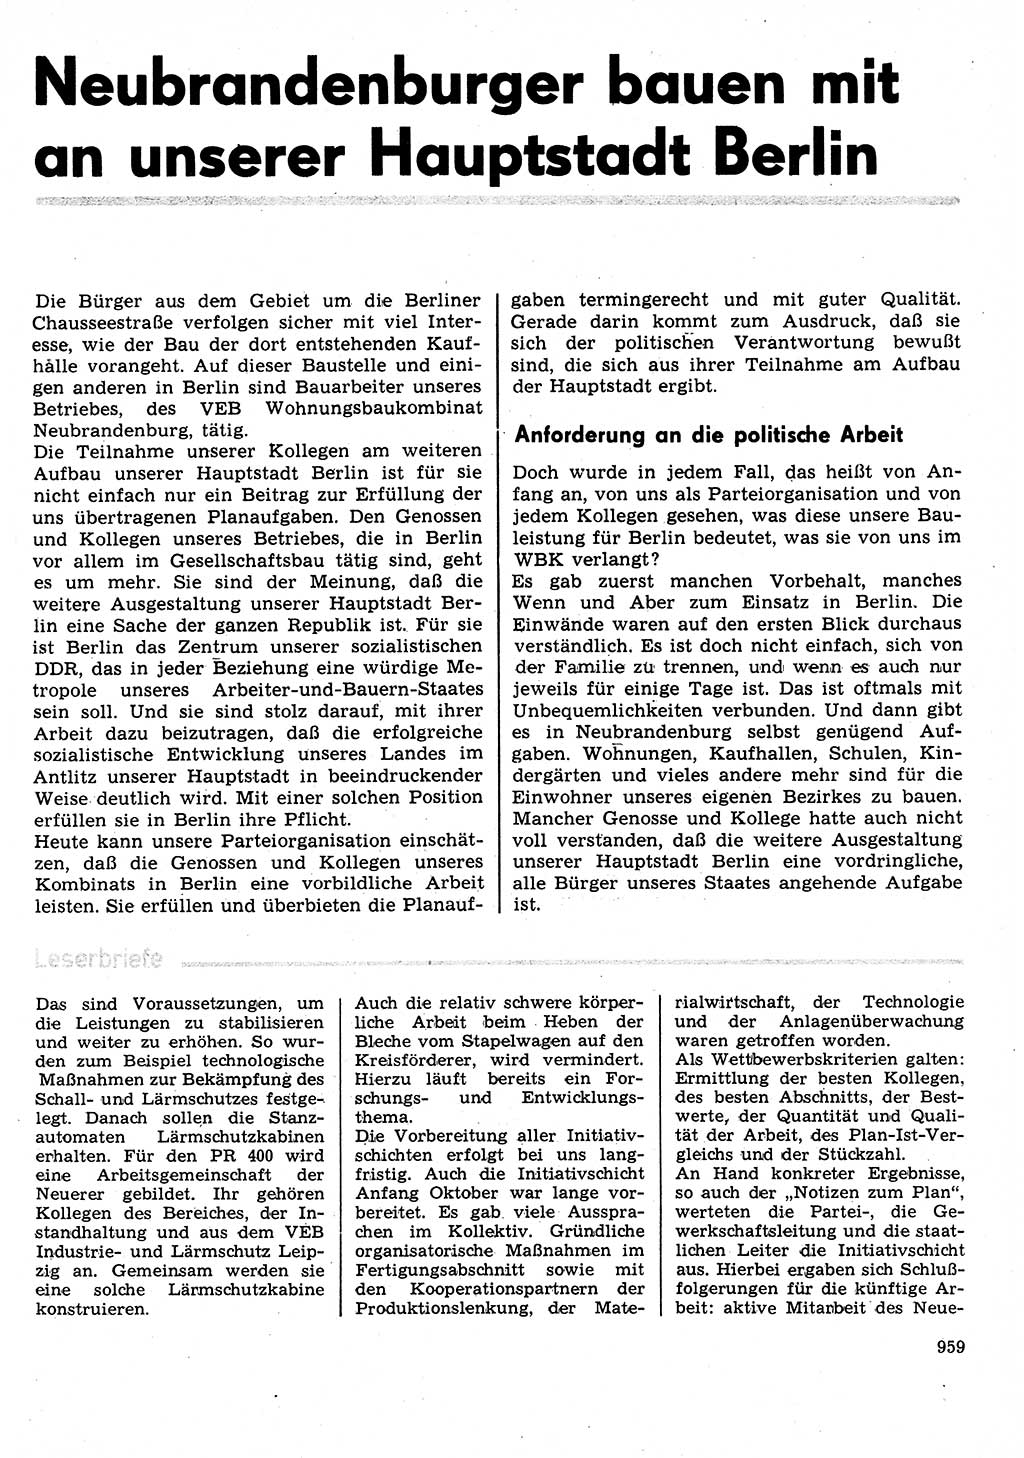 Neuer Weg (NW), Organ des Zentralkomitees (ZK) der SED (Sozialistische Einheitspartei Deutschlands) für Fragen des Parteilebens, 31. Jahrgang [Deutsche Demokratische Republik (DDR)] 1976, Seite 959 (NW ZK SED DDR 1976, S. 959)